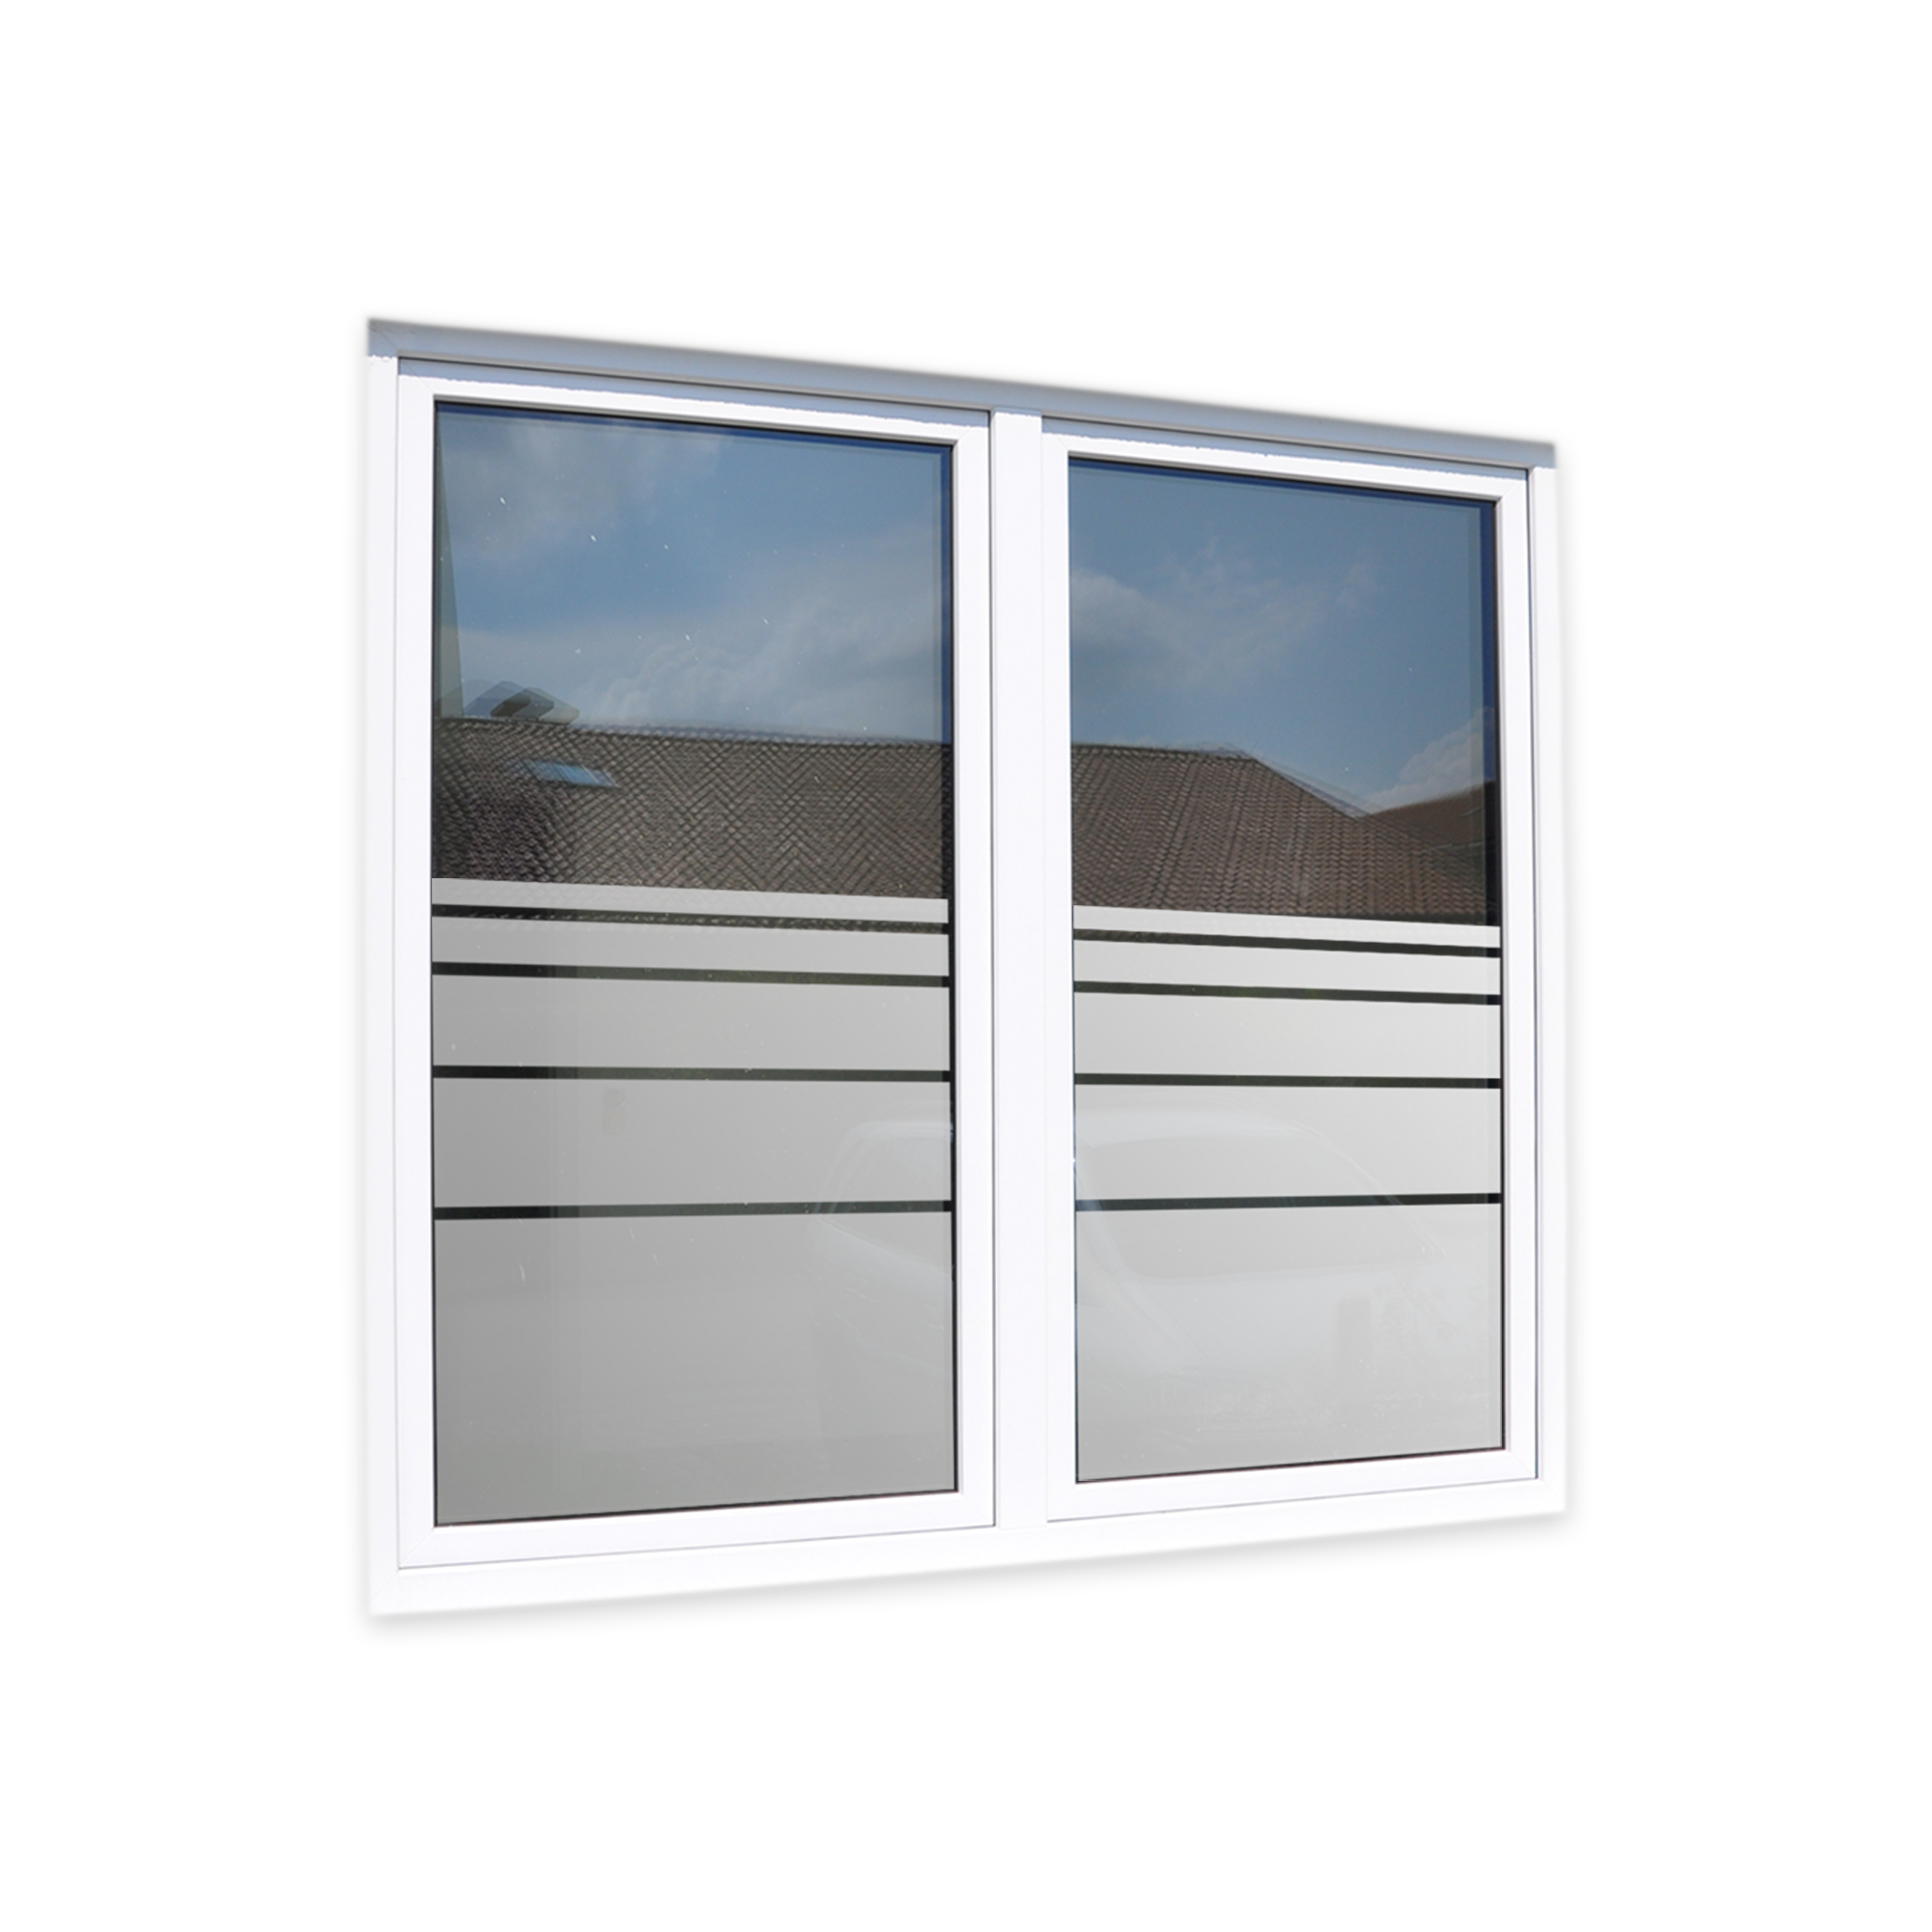 ANGEBOT: Dienstleistung Fensterfolierung, inkl. UV Schutzfolie PREMIUM  (glasklar) - Fenster Folien und Sichtschutzfolien